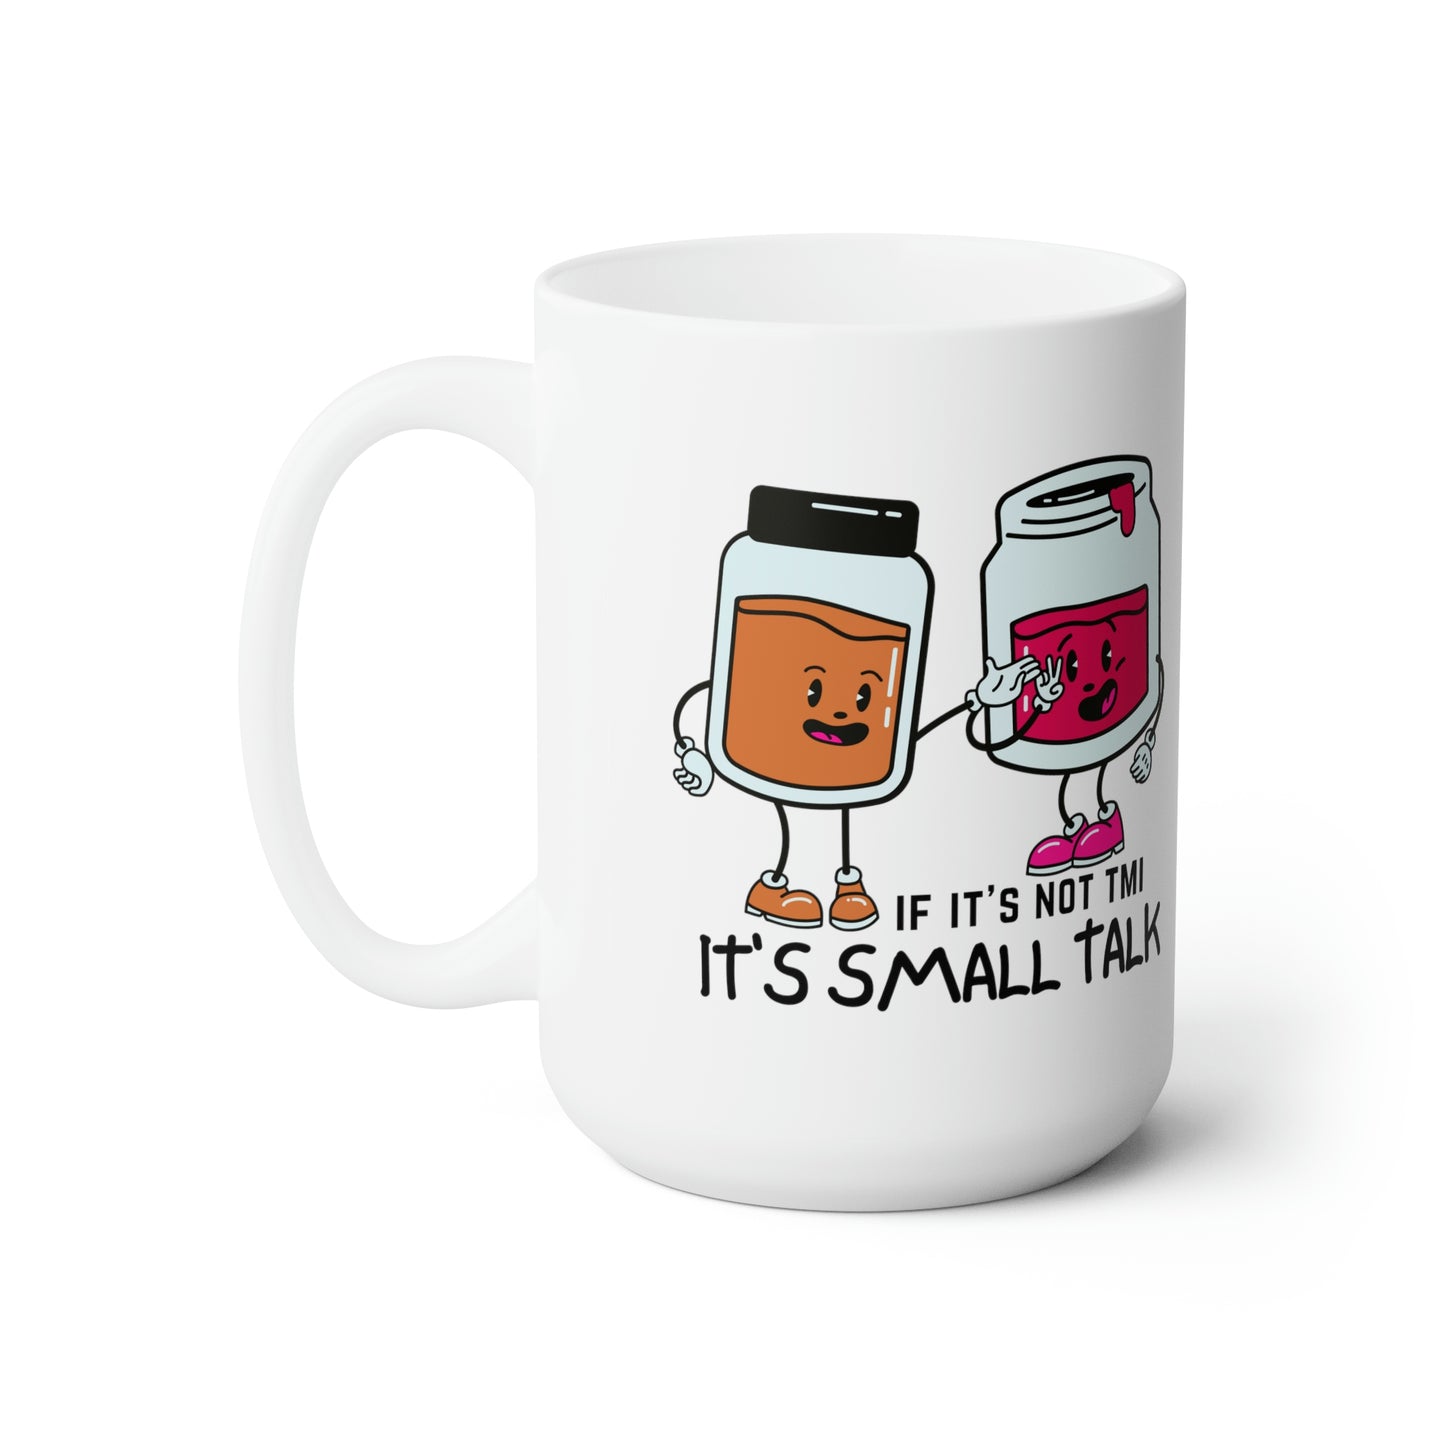 "If It's Not TMI, It's Small Talk" Ceramic Mug 15oz